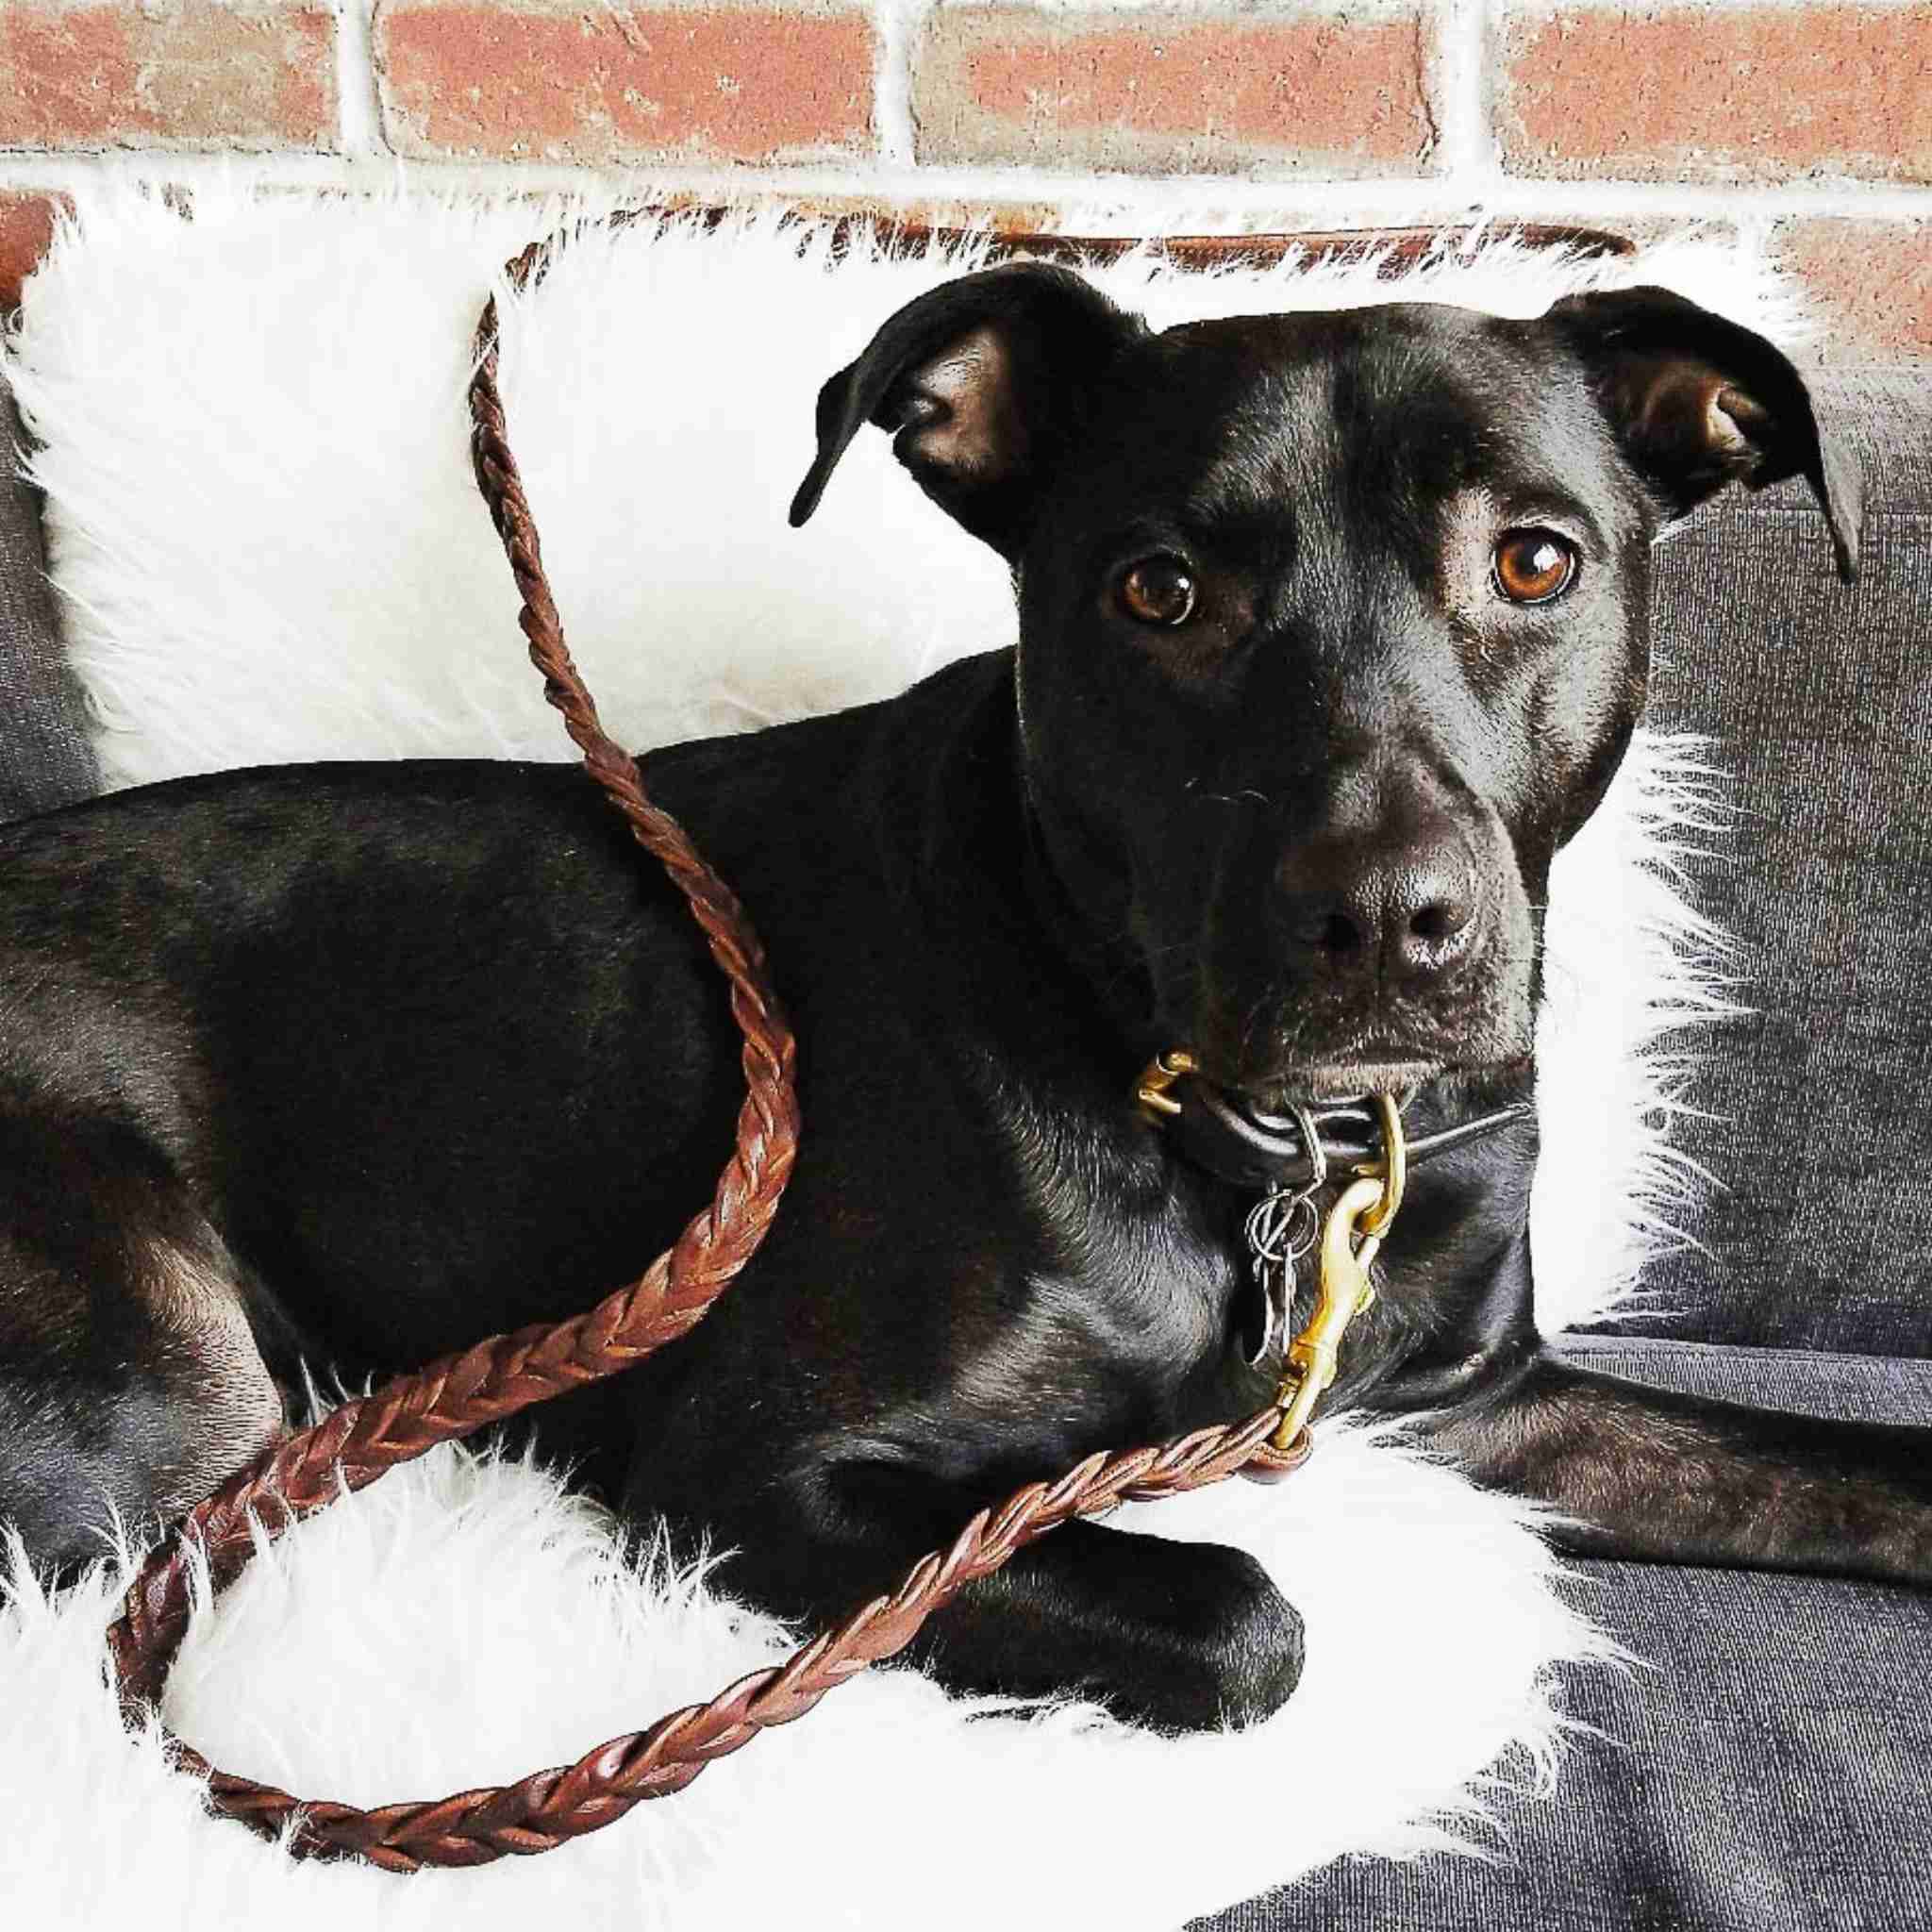 Braided Leather - Dog Collar - Dog Lead